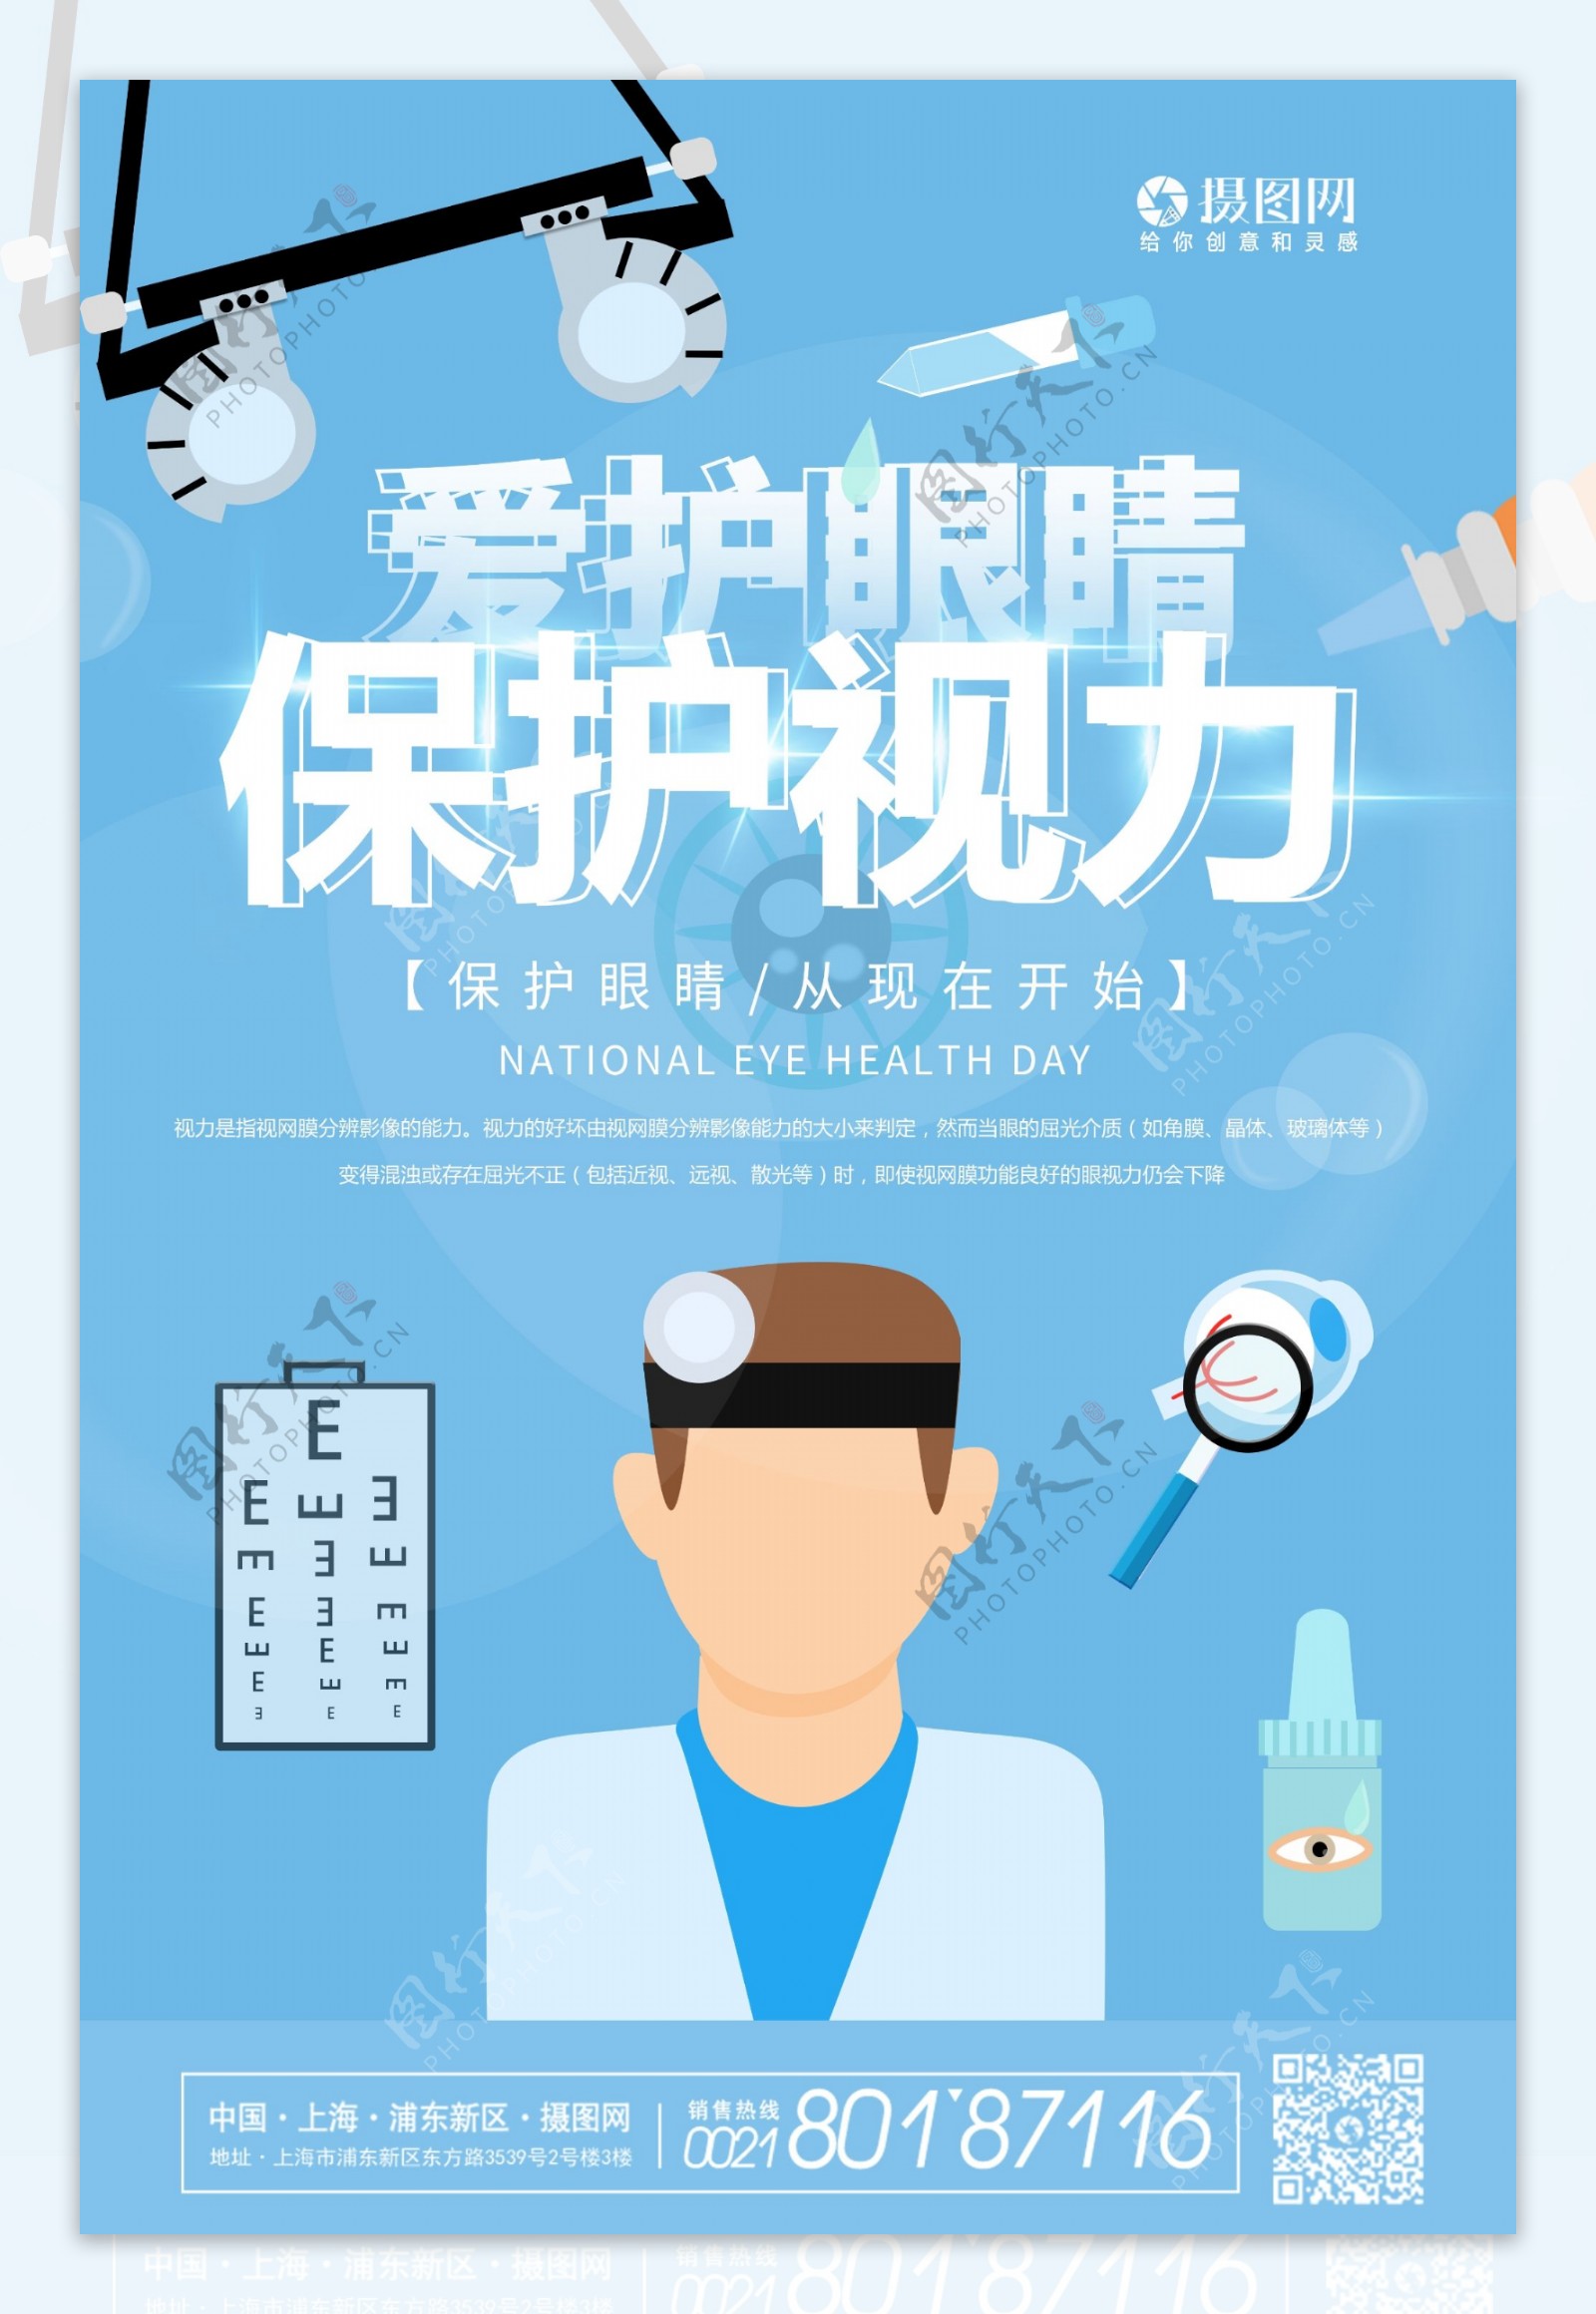 爱护眼睛保护视力医疗健康宣传海报